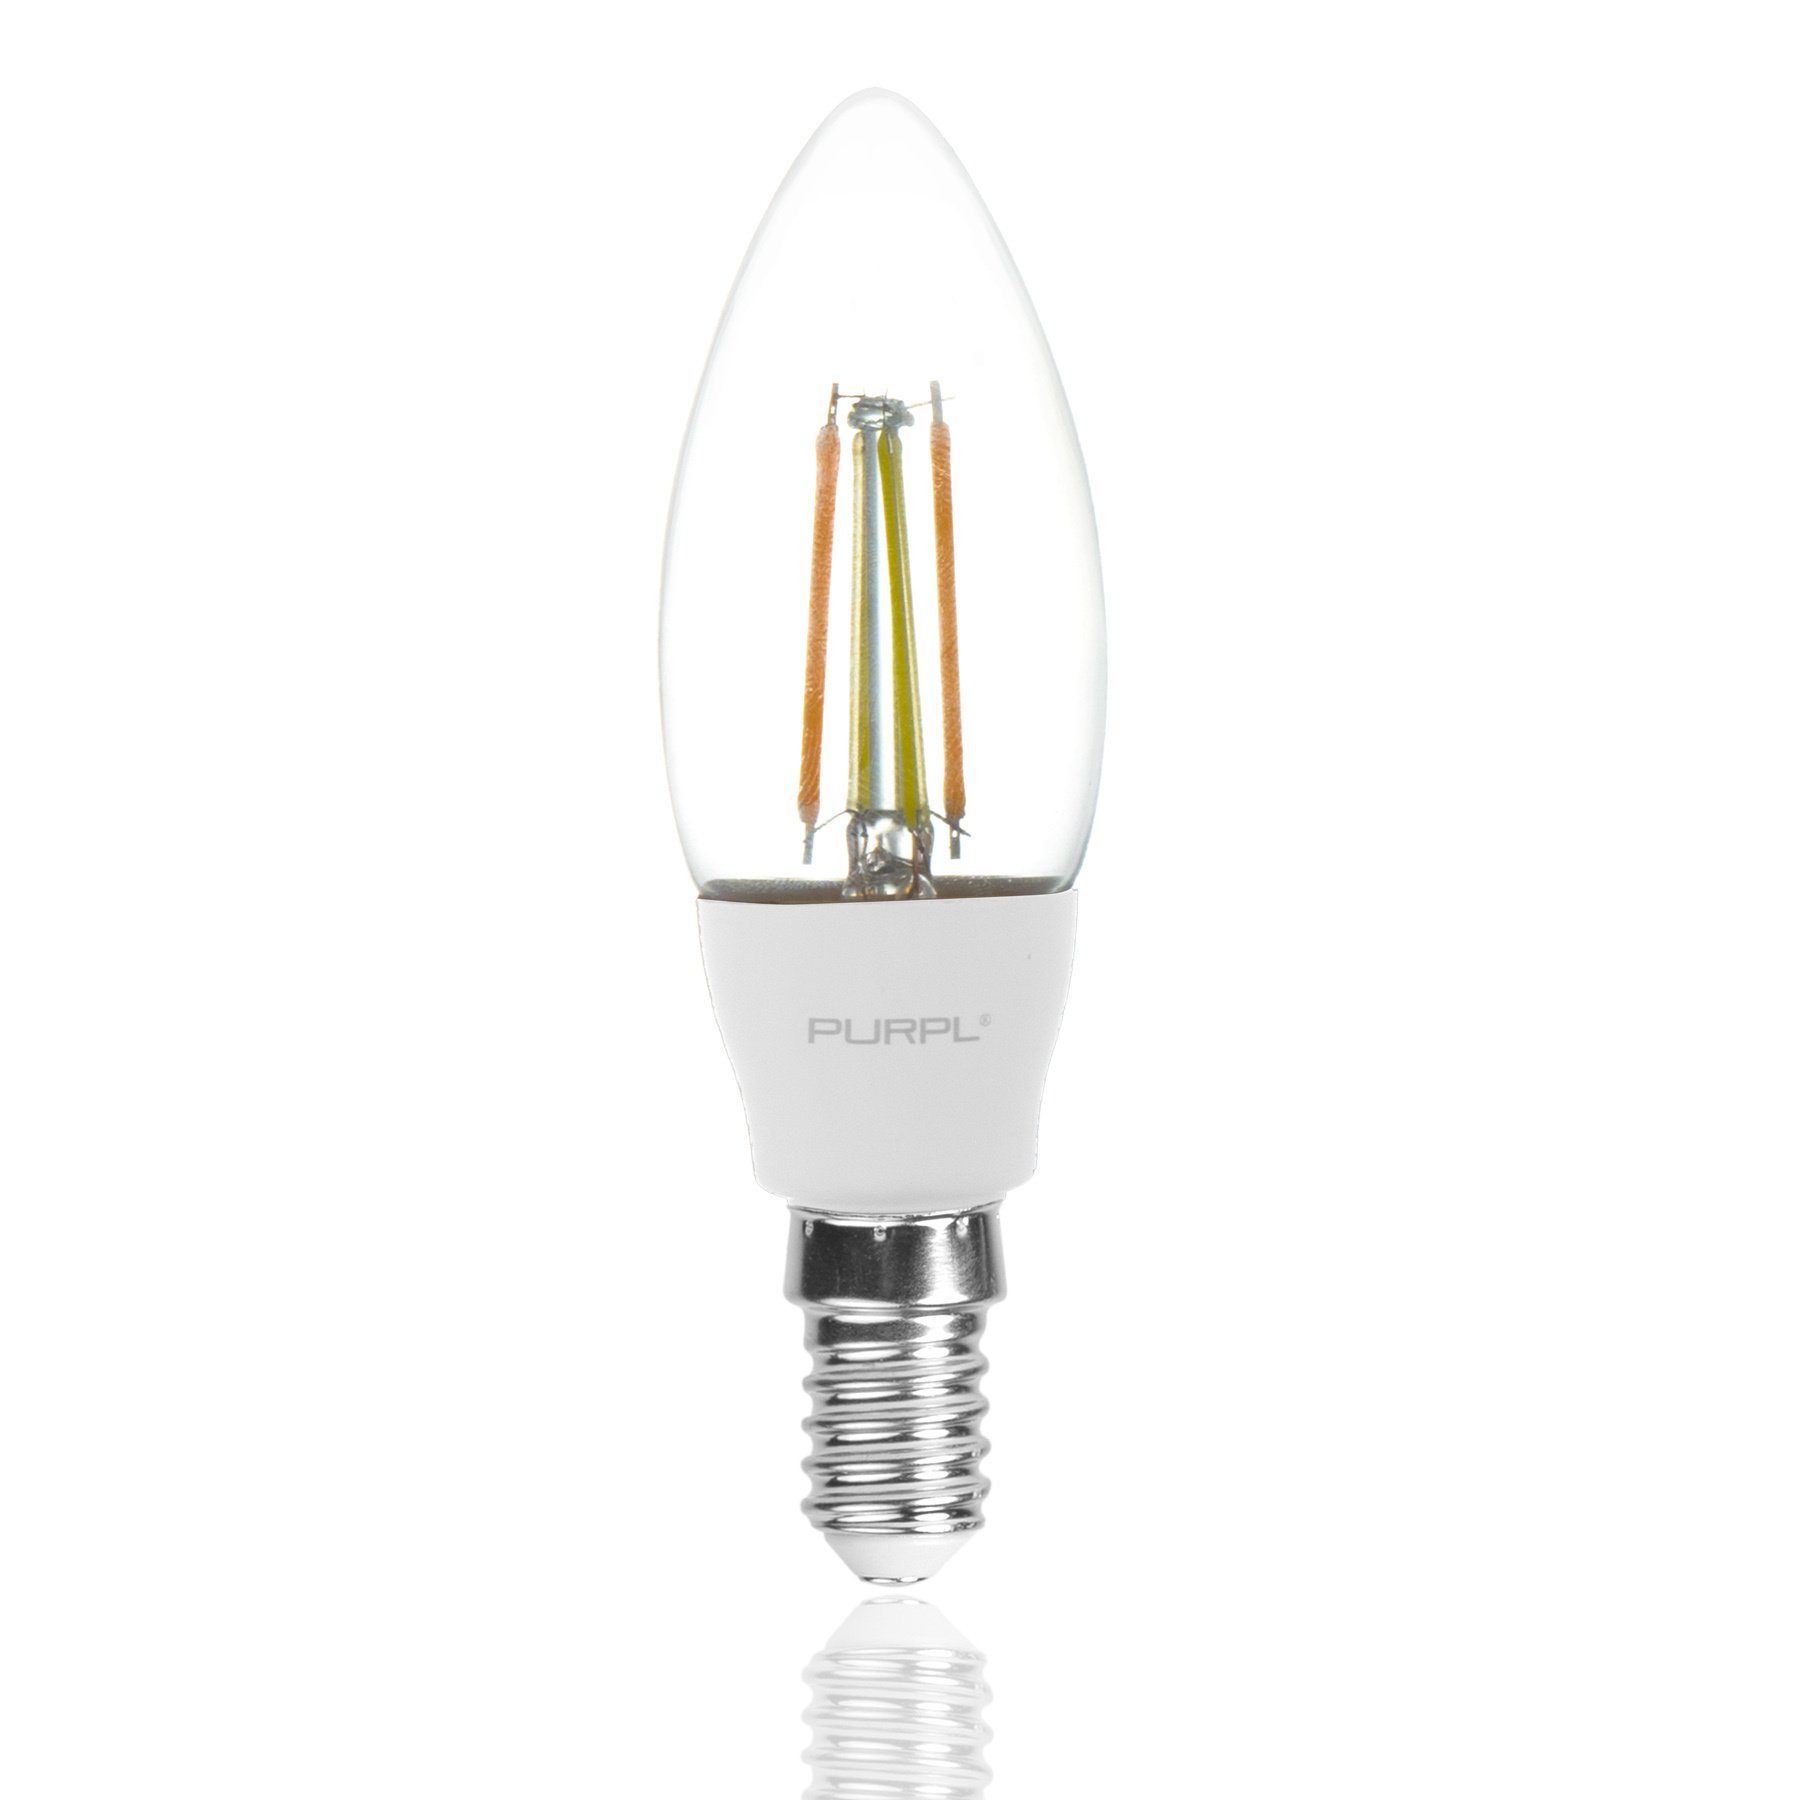 Permanent Rijke man weer LED lamp e27 koud wit| LED24 - LED24